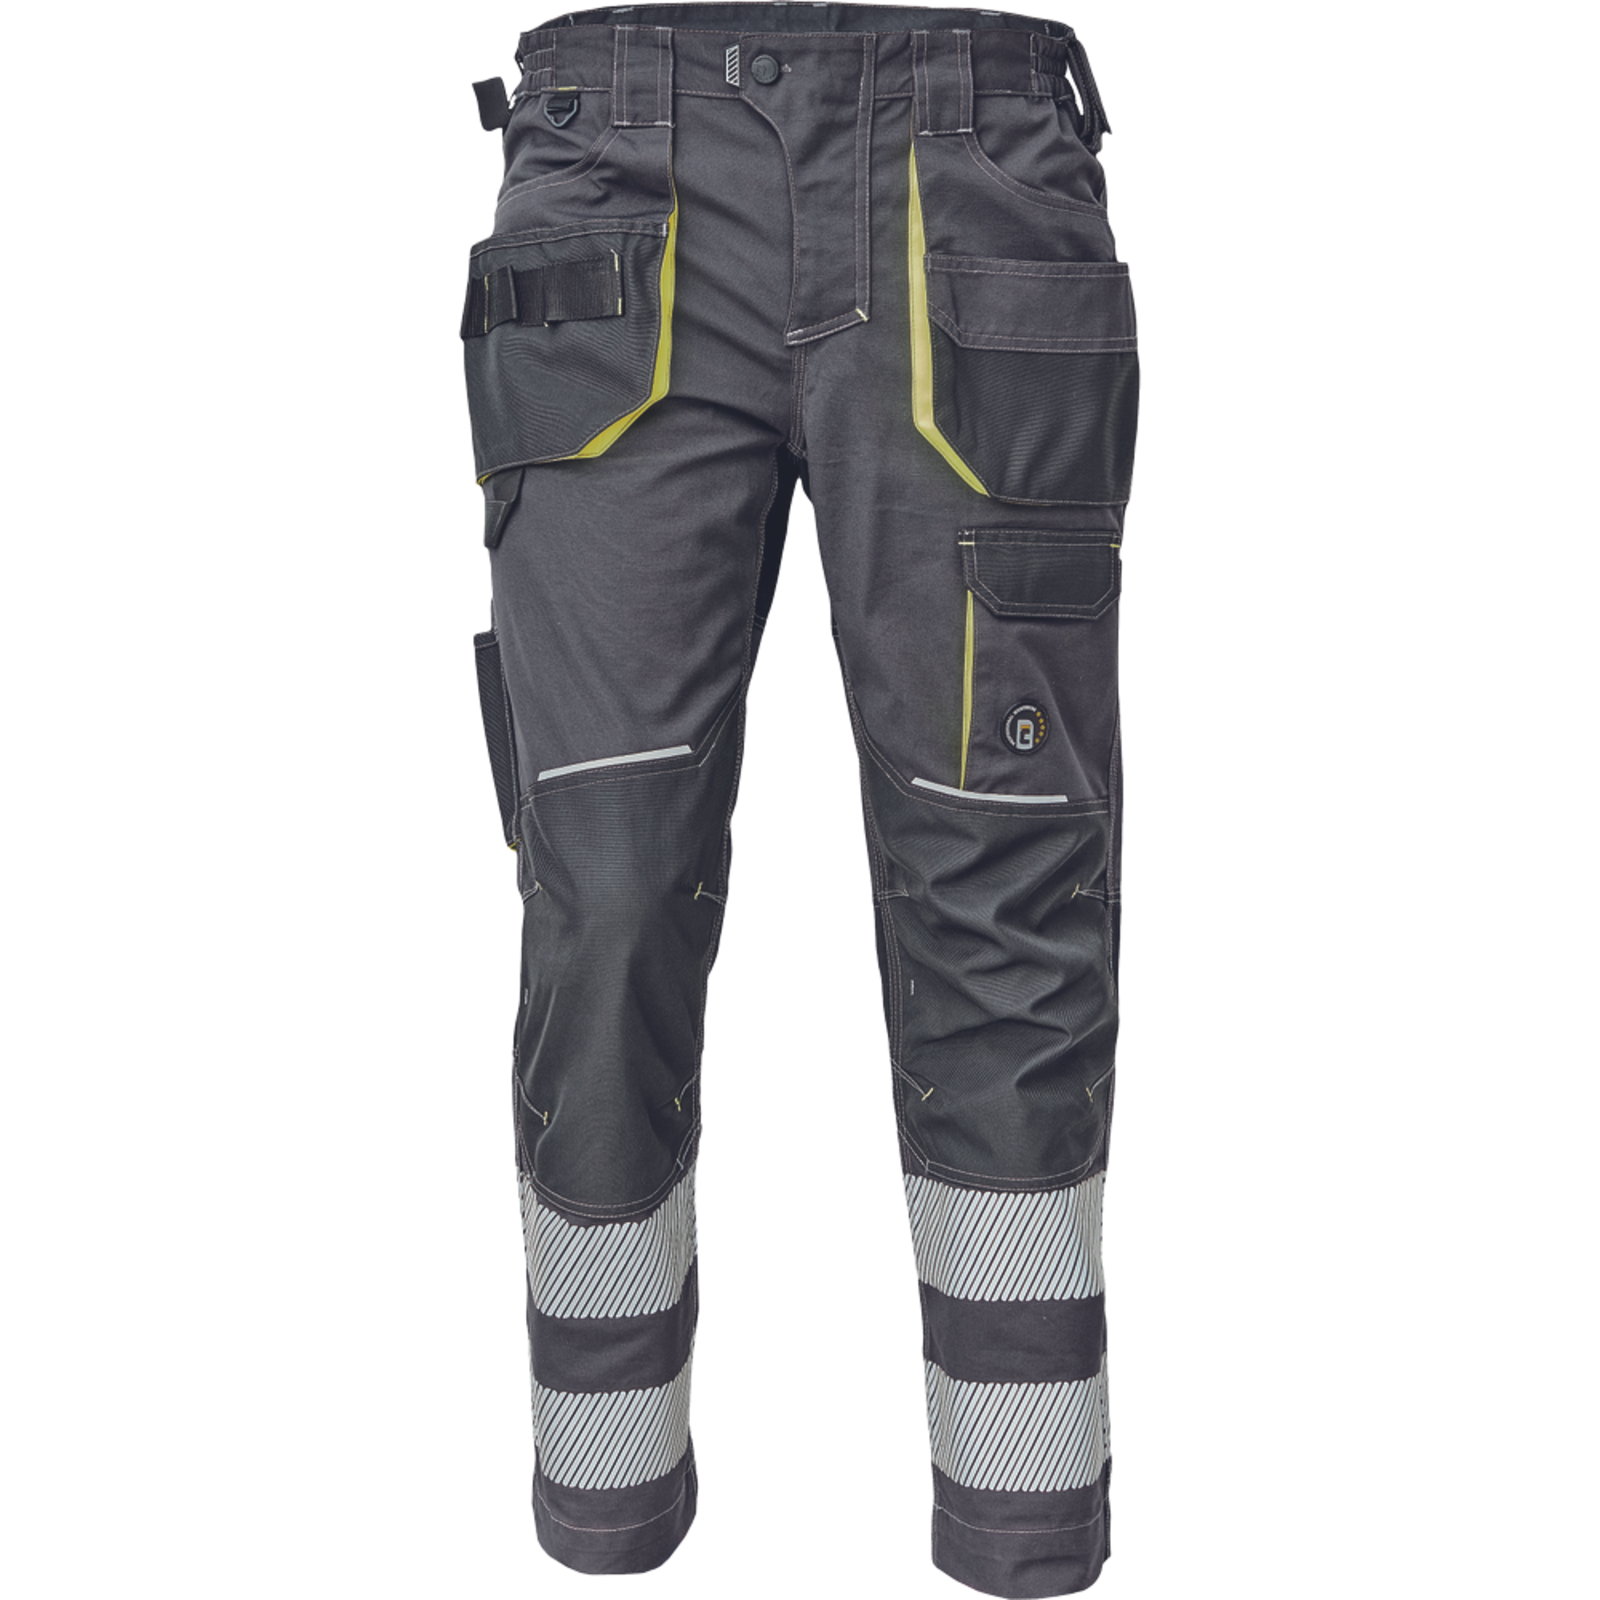 Pracovné nohavice s reflexnými pruhmi Cerva Sheldon RFLX pánske - veľkosť: 54, farba: antracit/žltá